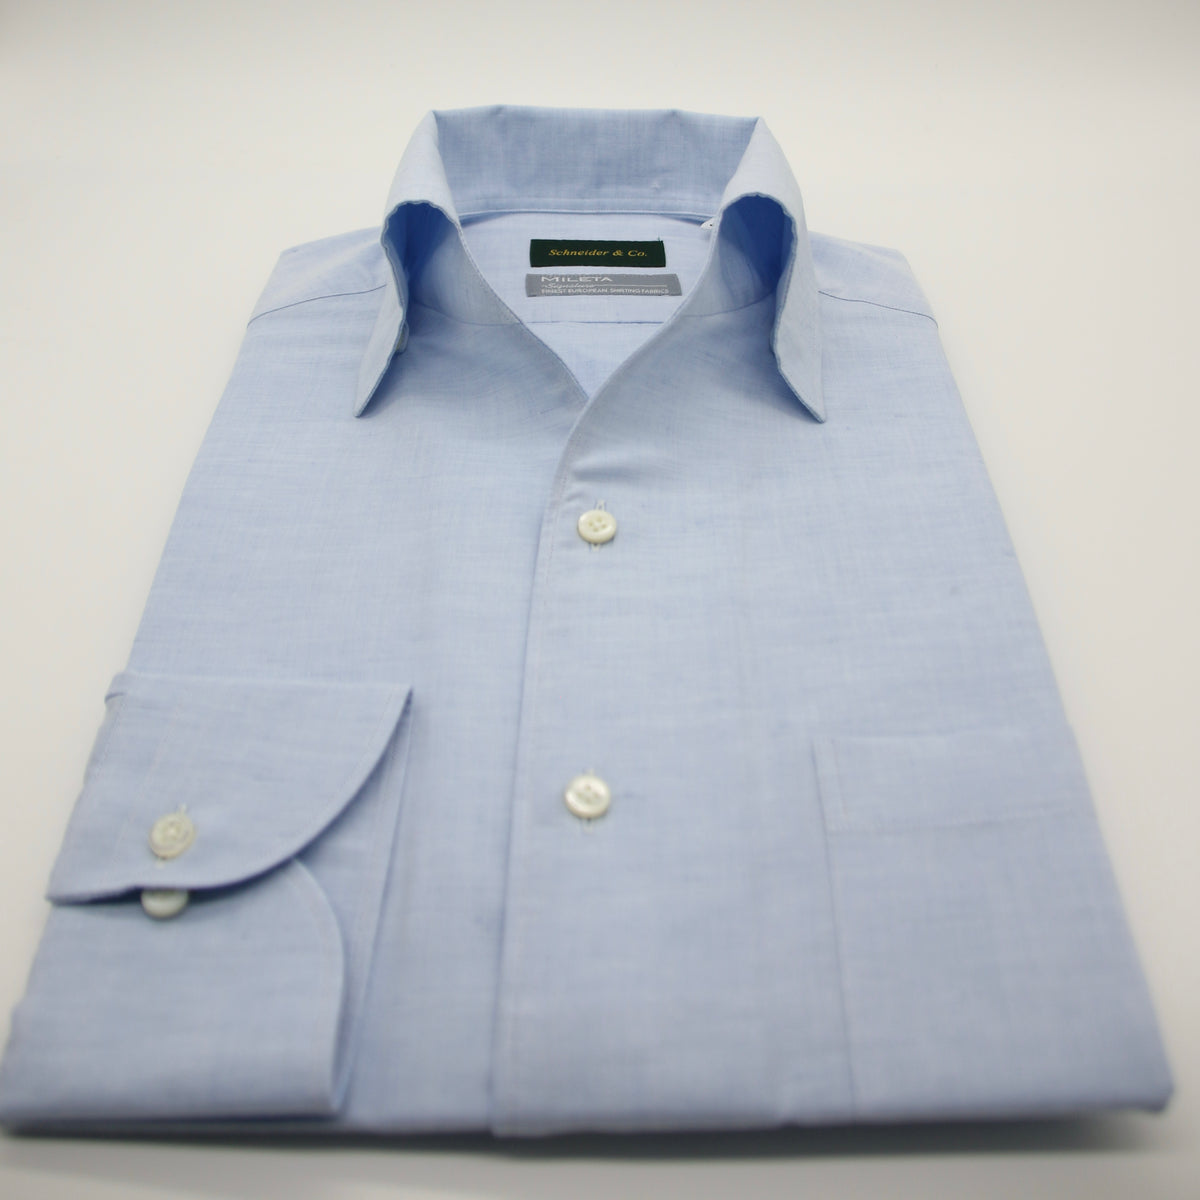 Cotton/Linen One-piece Collar Shirt Blue – Schneider & Co.